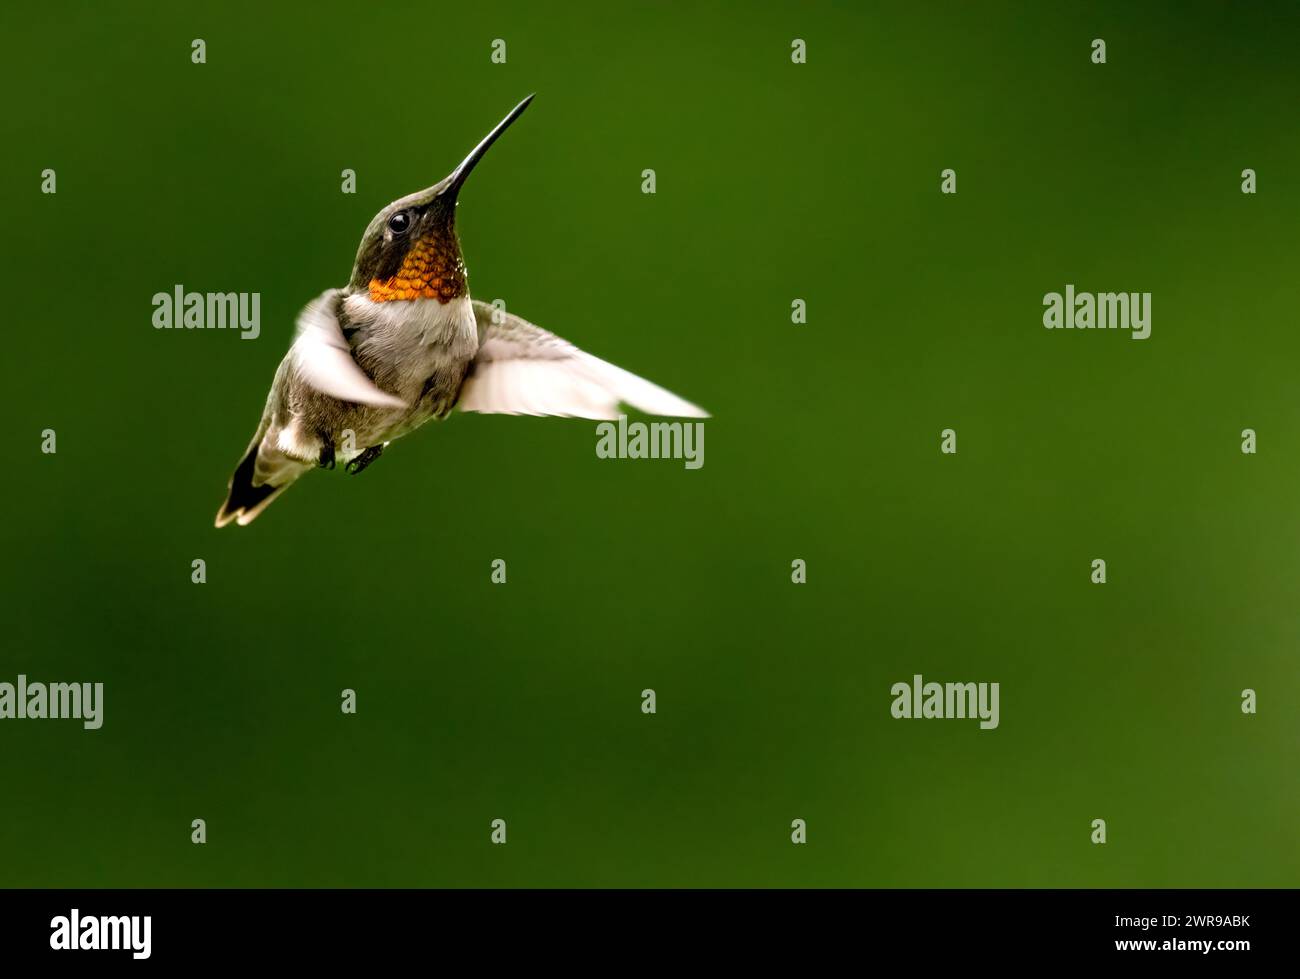 Ruby a jeté Hummingbird plané en vol, son visage montré en gros plan avec de grands détails sur fond vert flou Banque D'Images